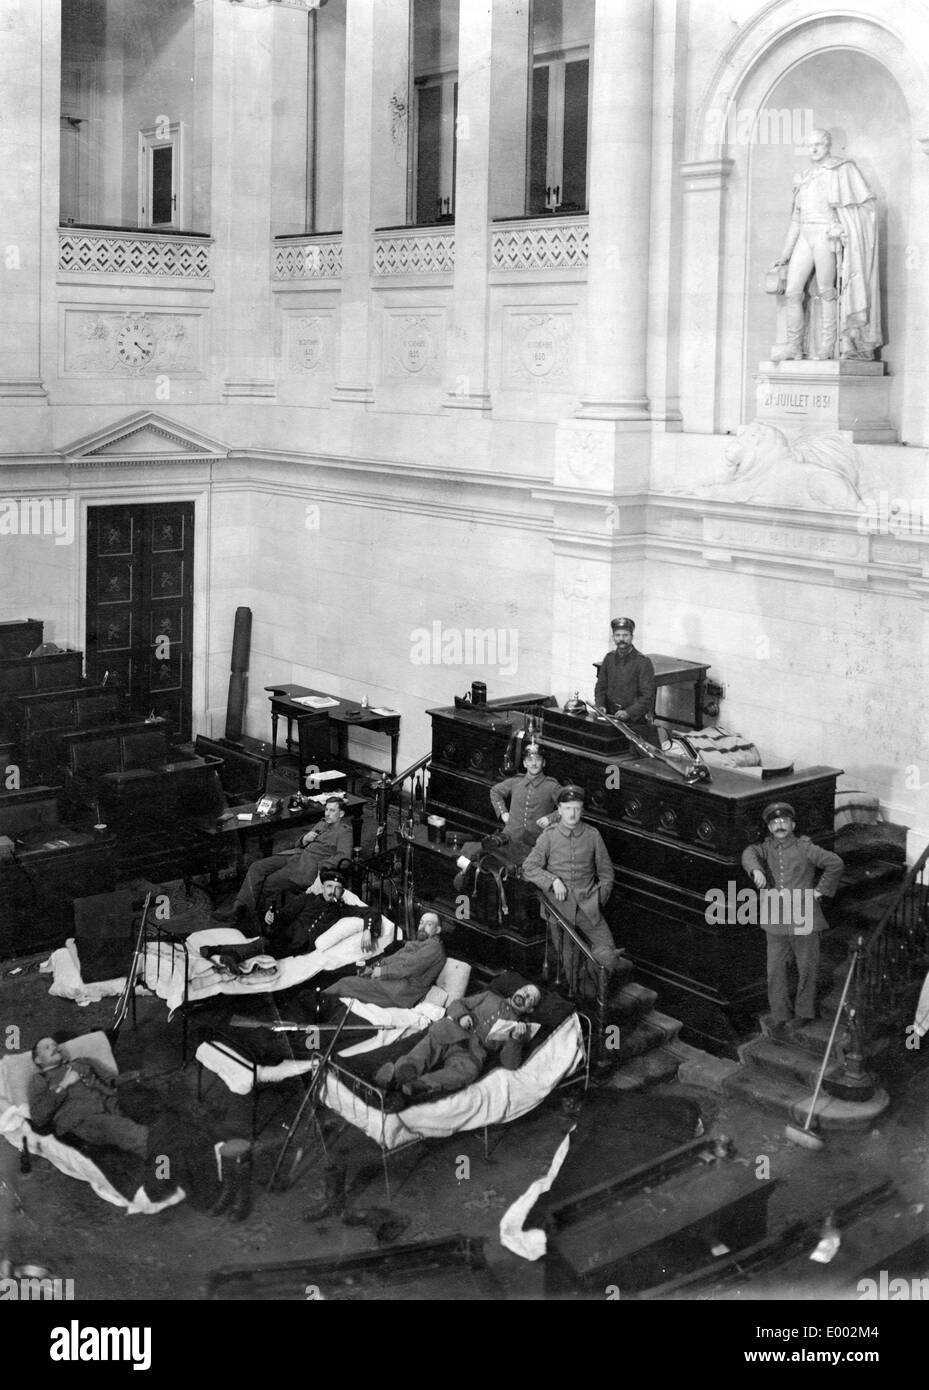 L'hôpital militaire allemand dans le parlement belge, 1915 Banque D'Images